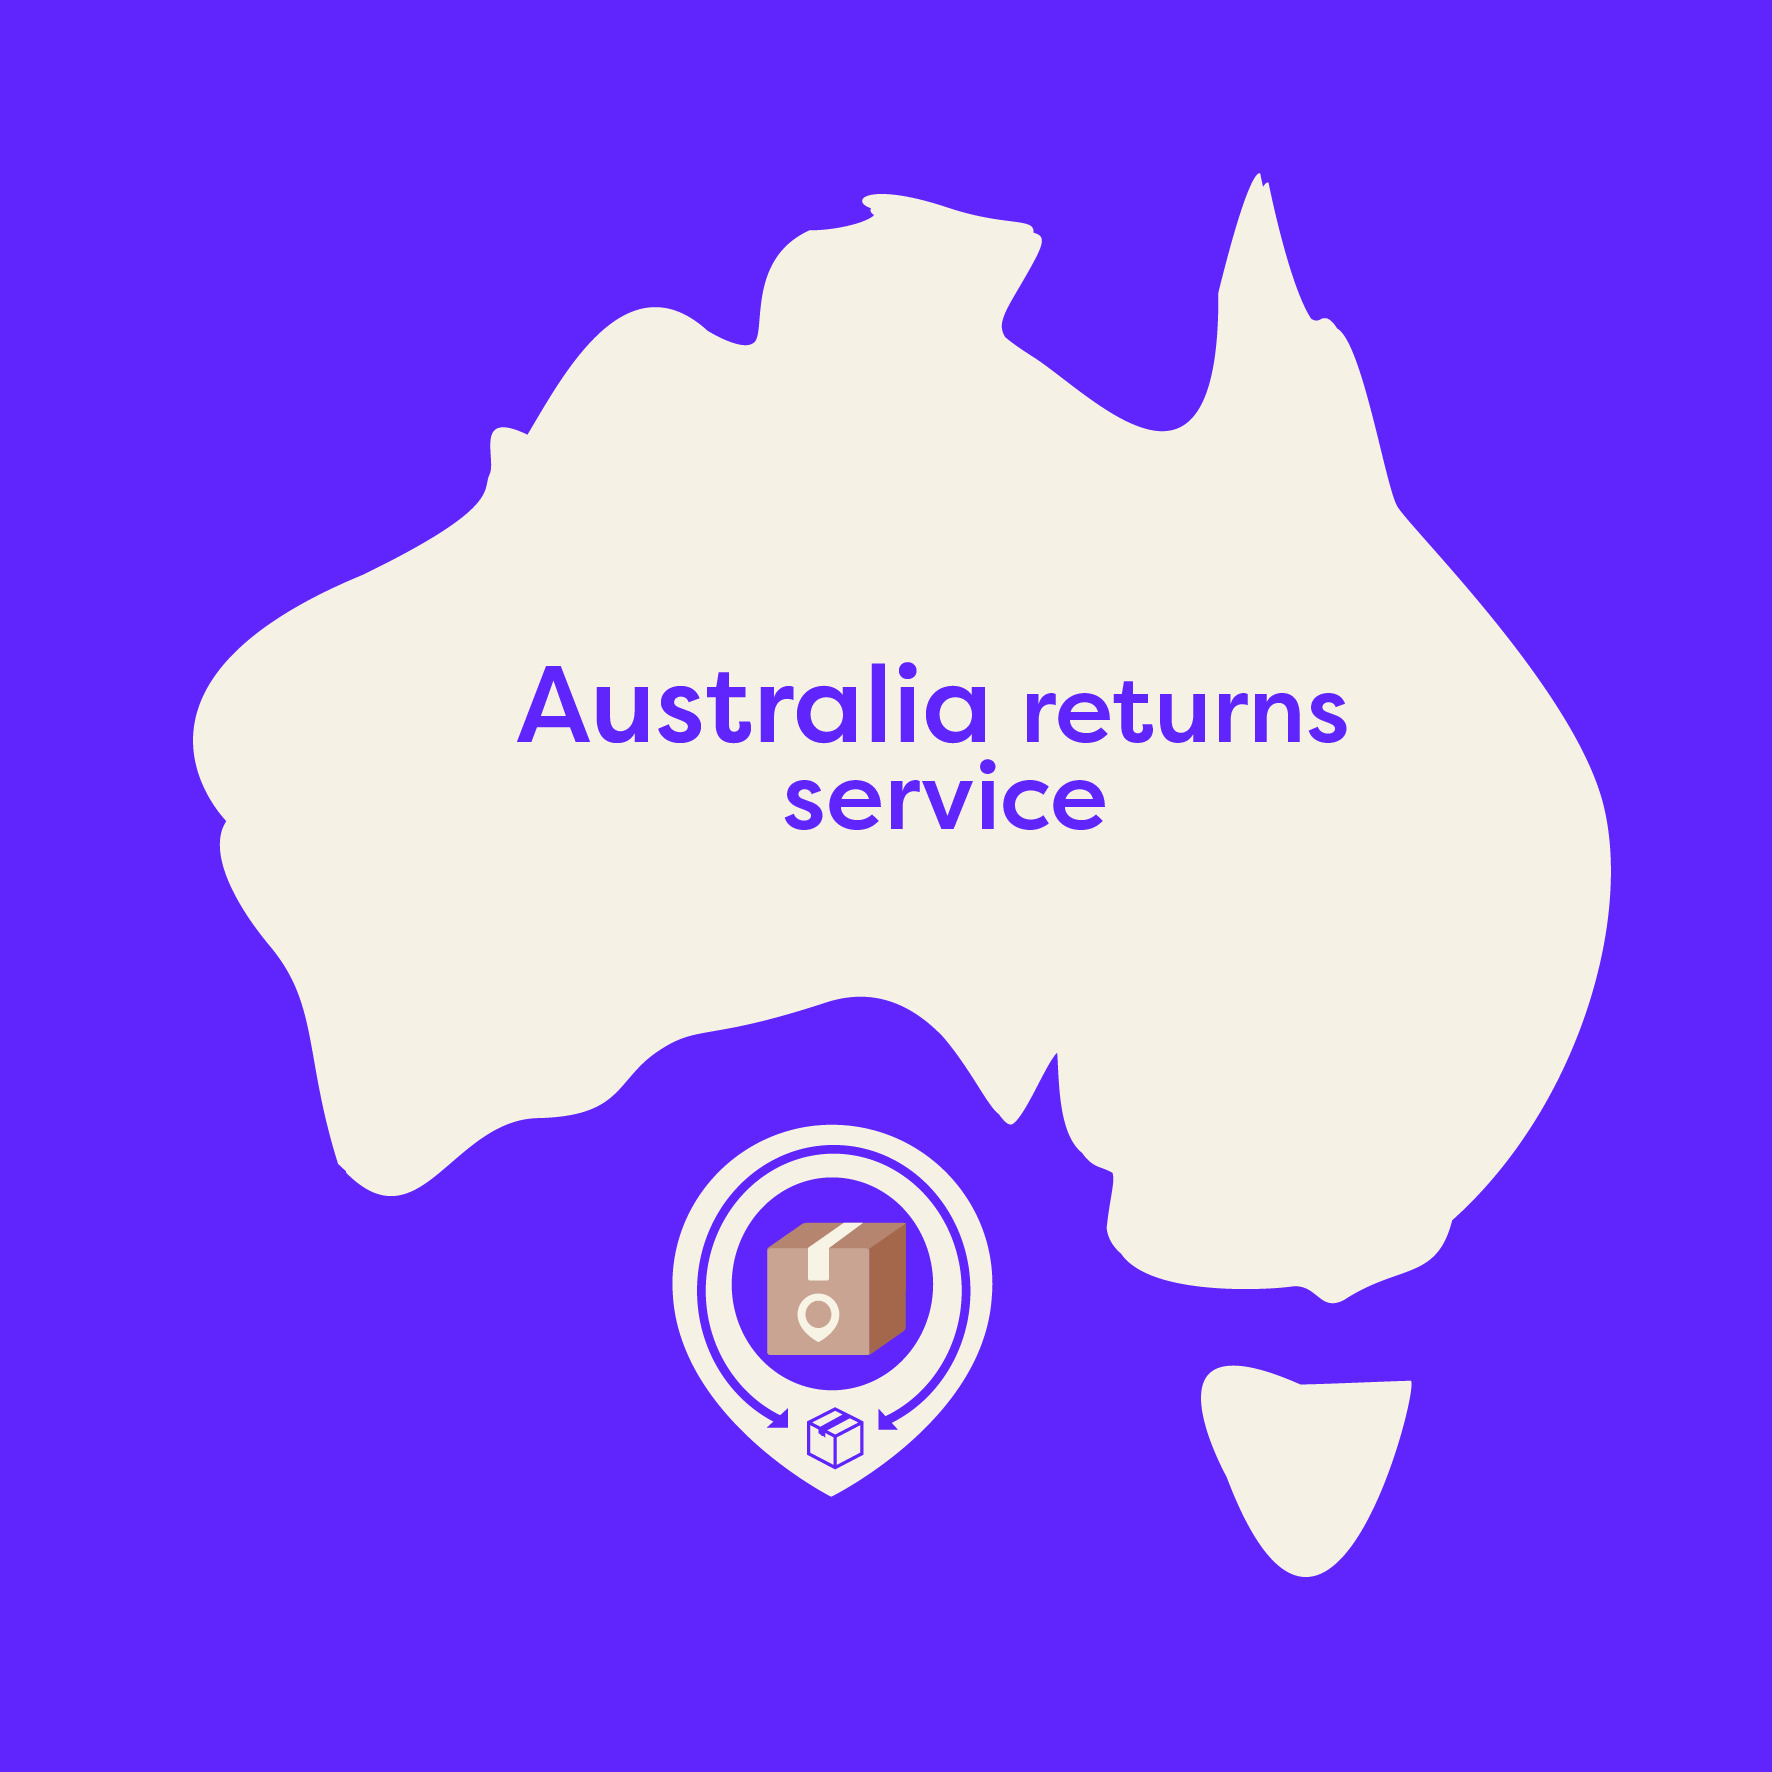 Australia returns service